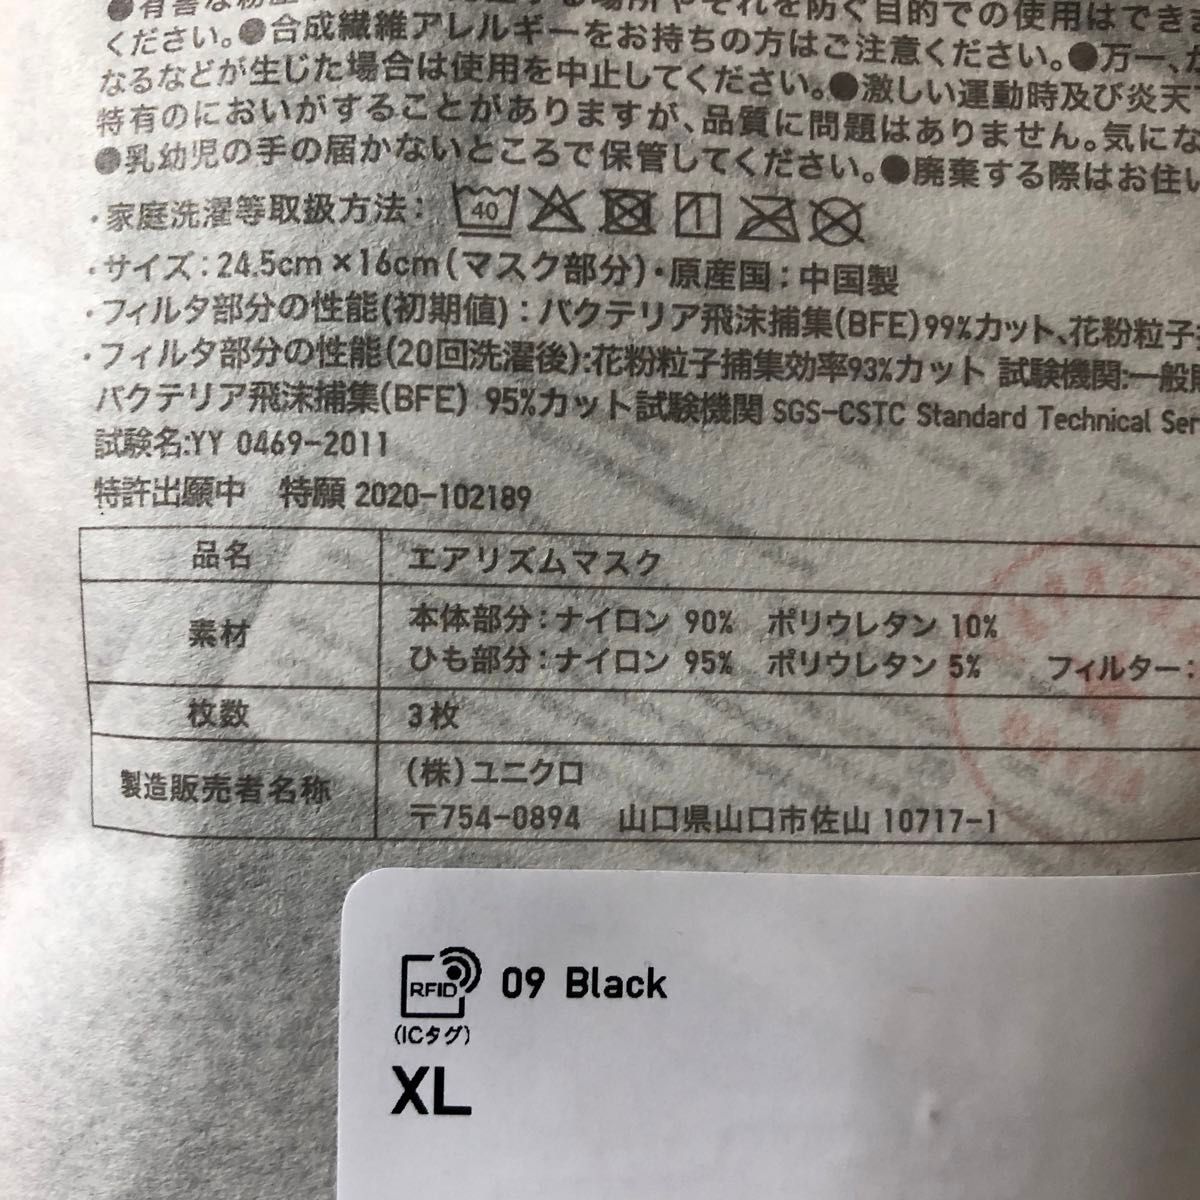 ユニクロ エアリズム マスク XL 3枚組 ブラック 黒